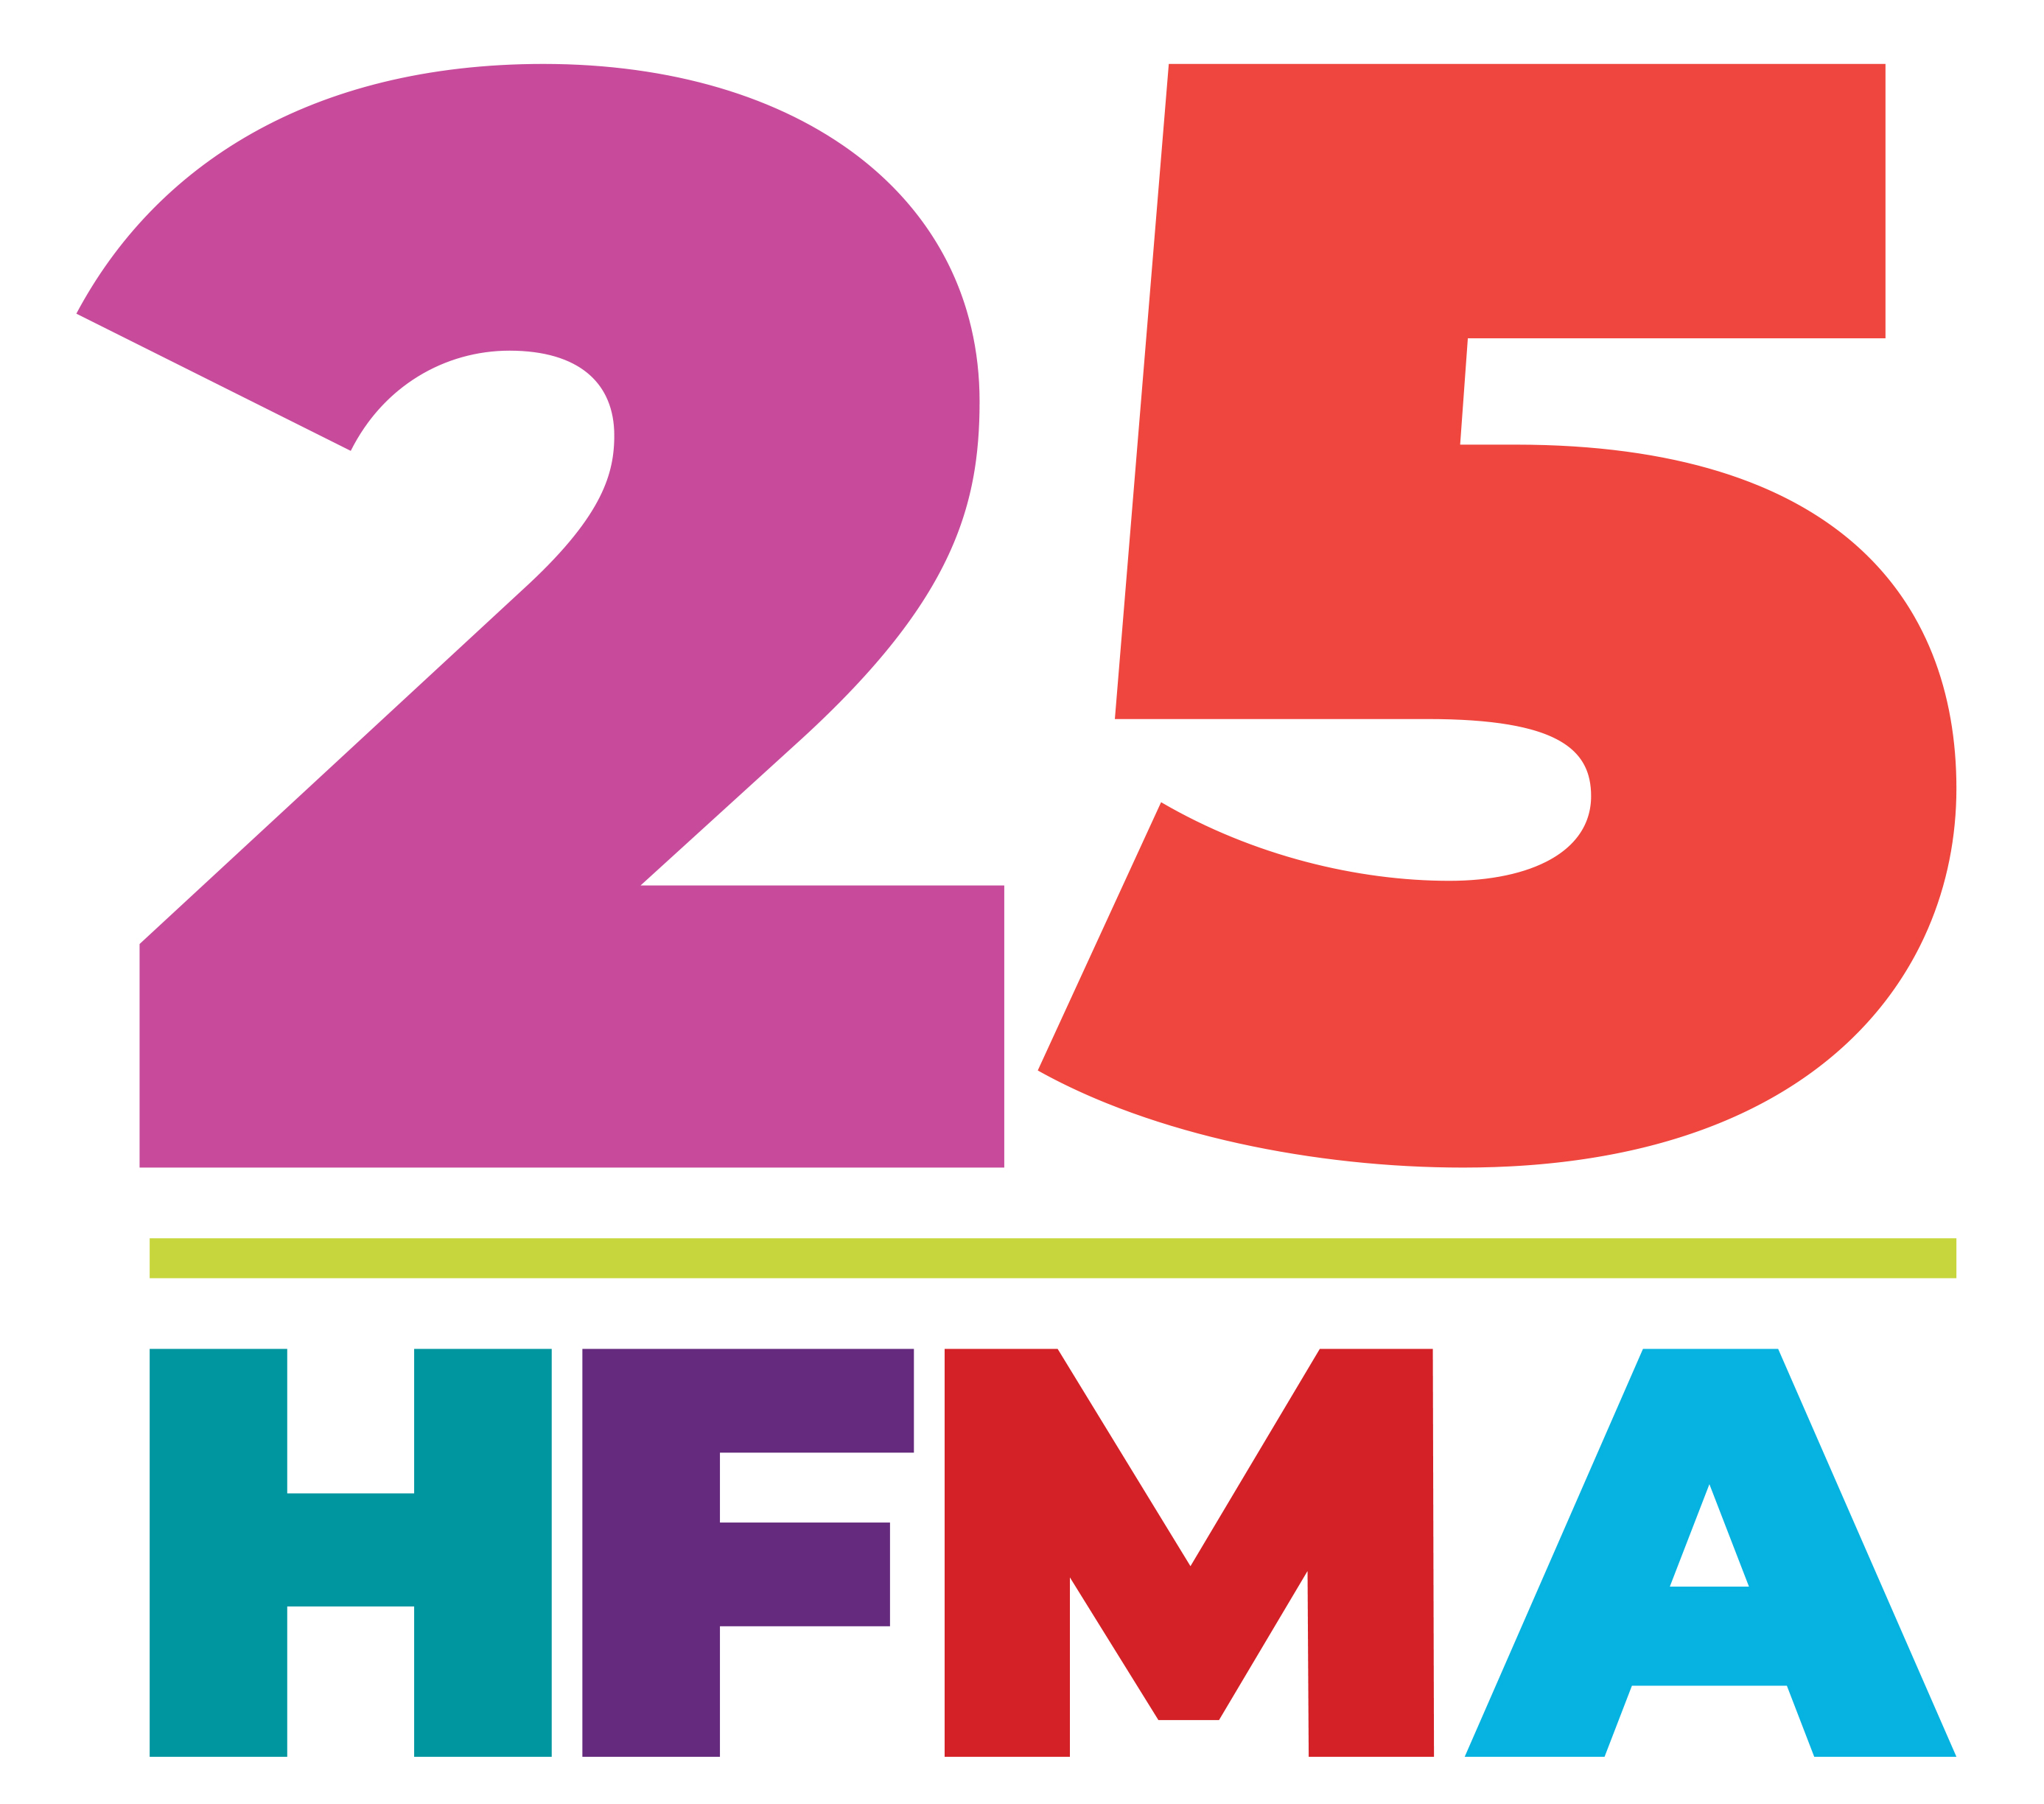 HFMA at 25 image